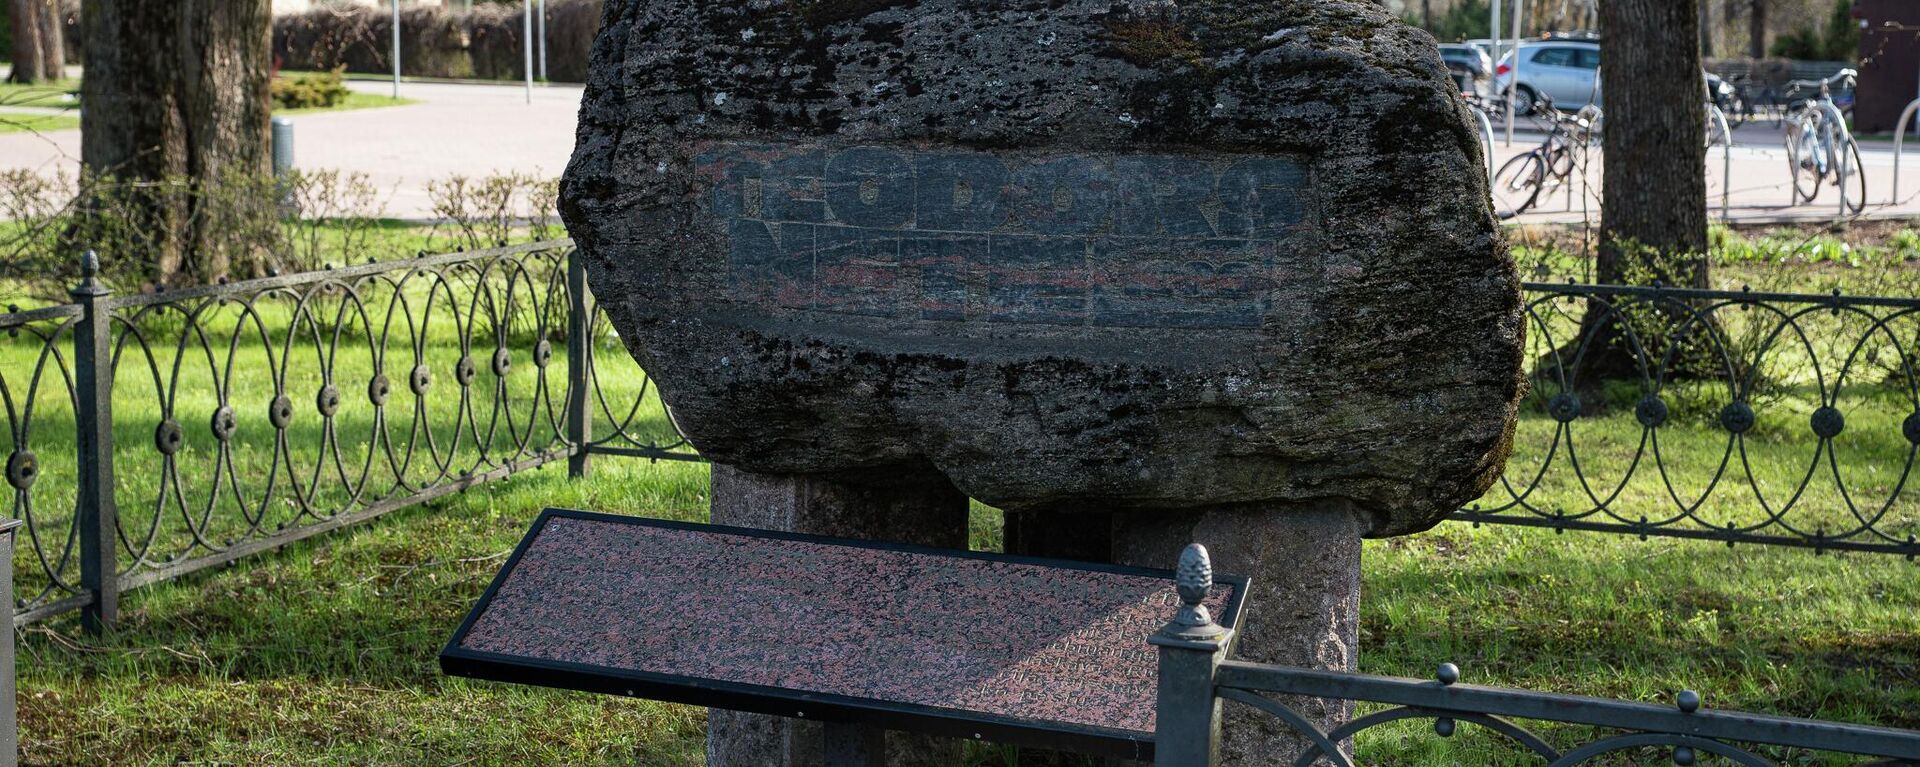 Представители РСЛ провели пикет против сноса памятного камня Теодору Нетте на станции Икшкеле - Sputnik Латвия, 1920, 28.07.2022